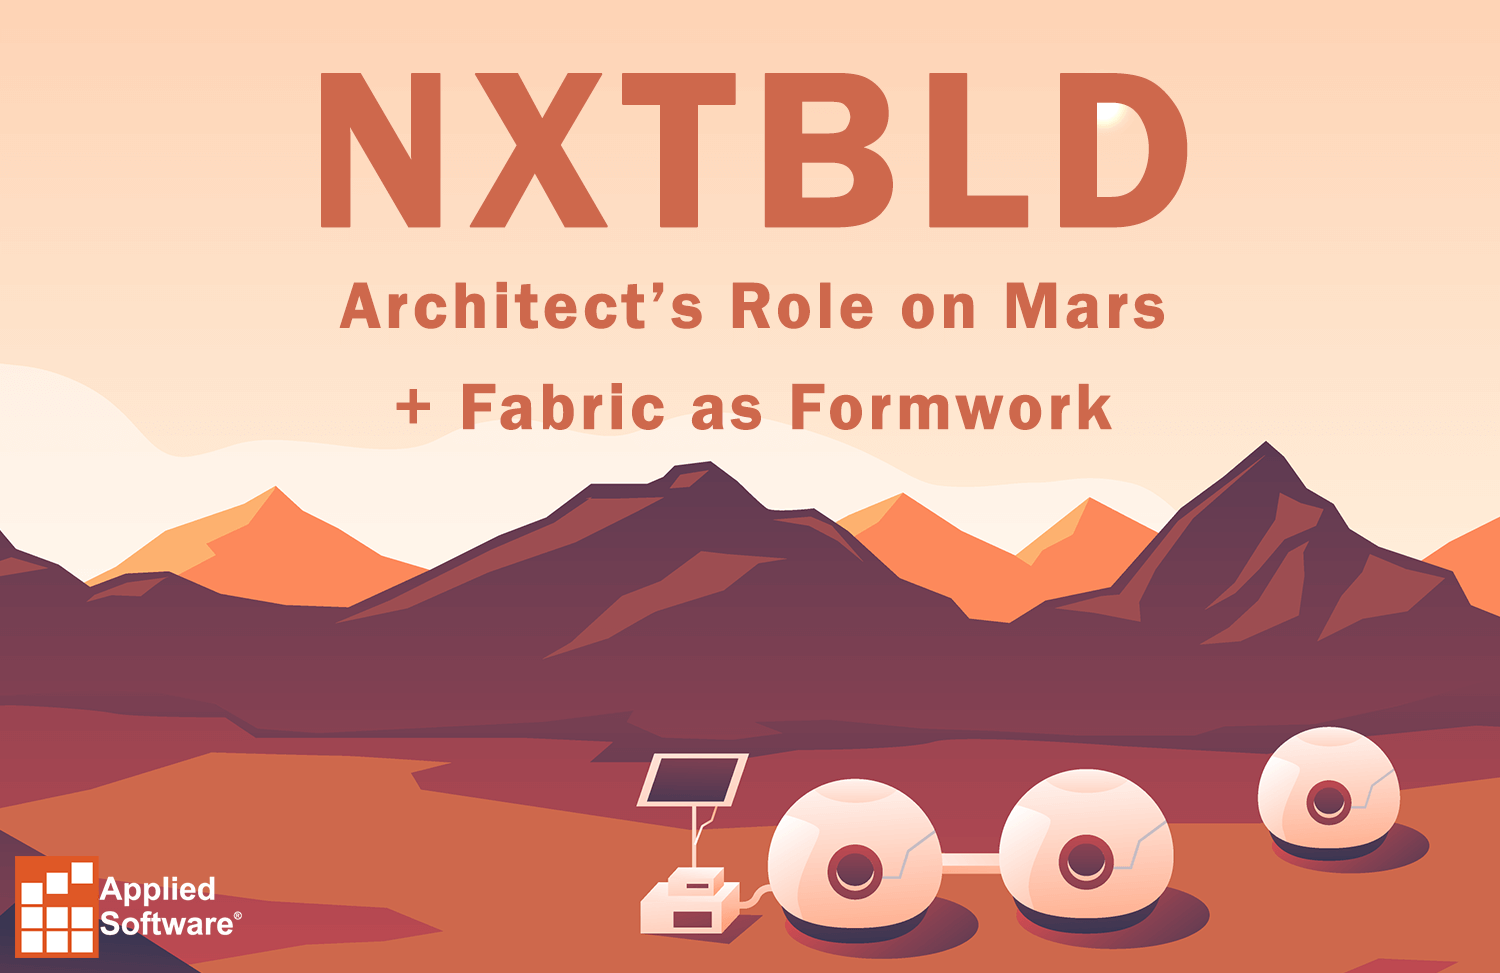 NXTBLD架构师在火星上的角色